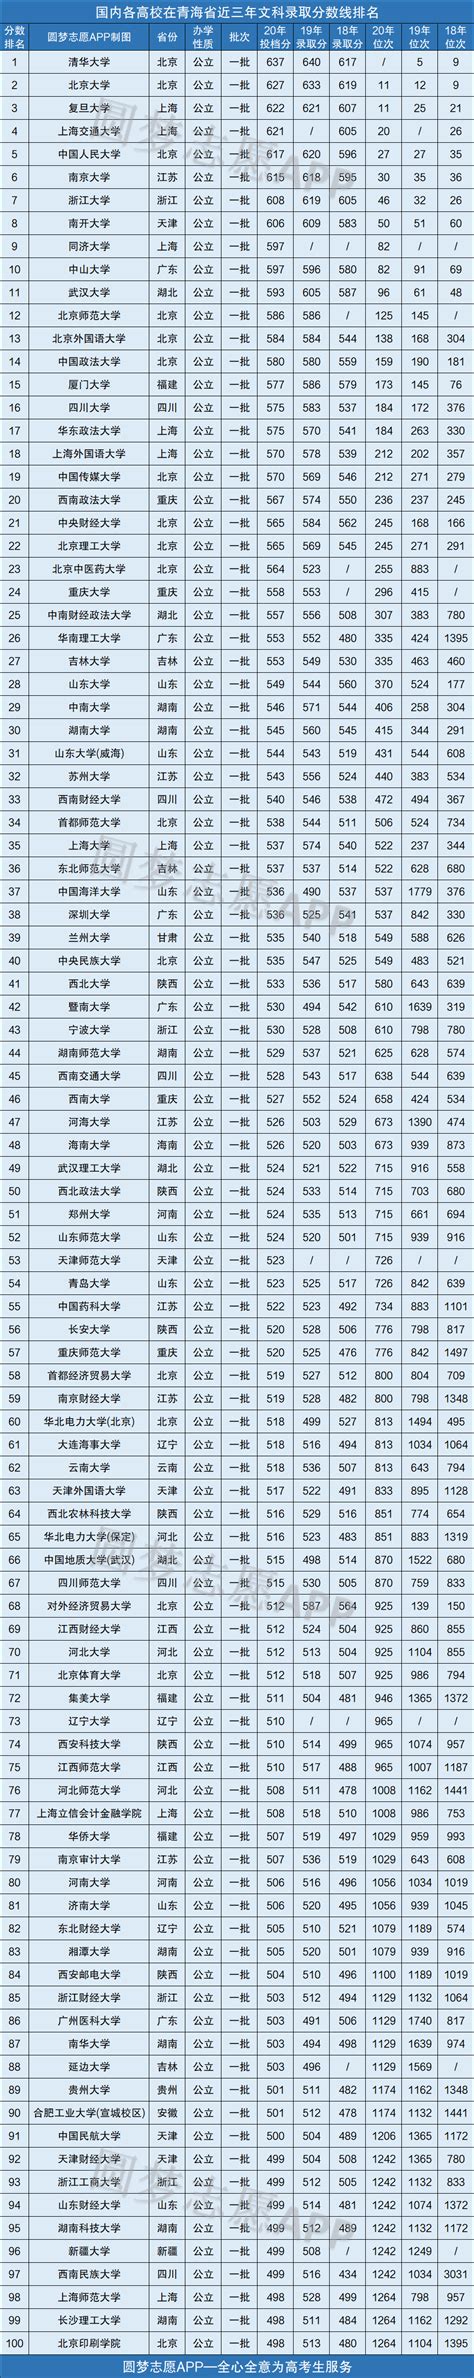 青海省各地县海拔一览表 - 豆丁网